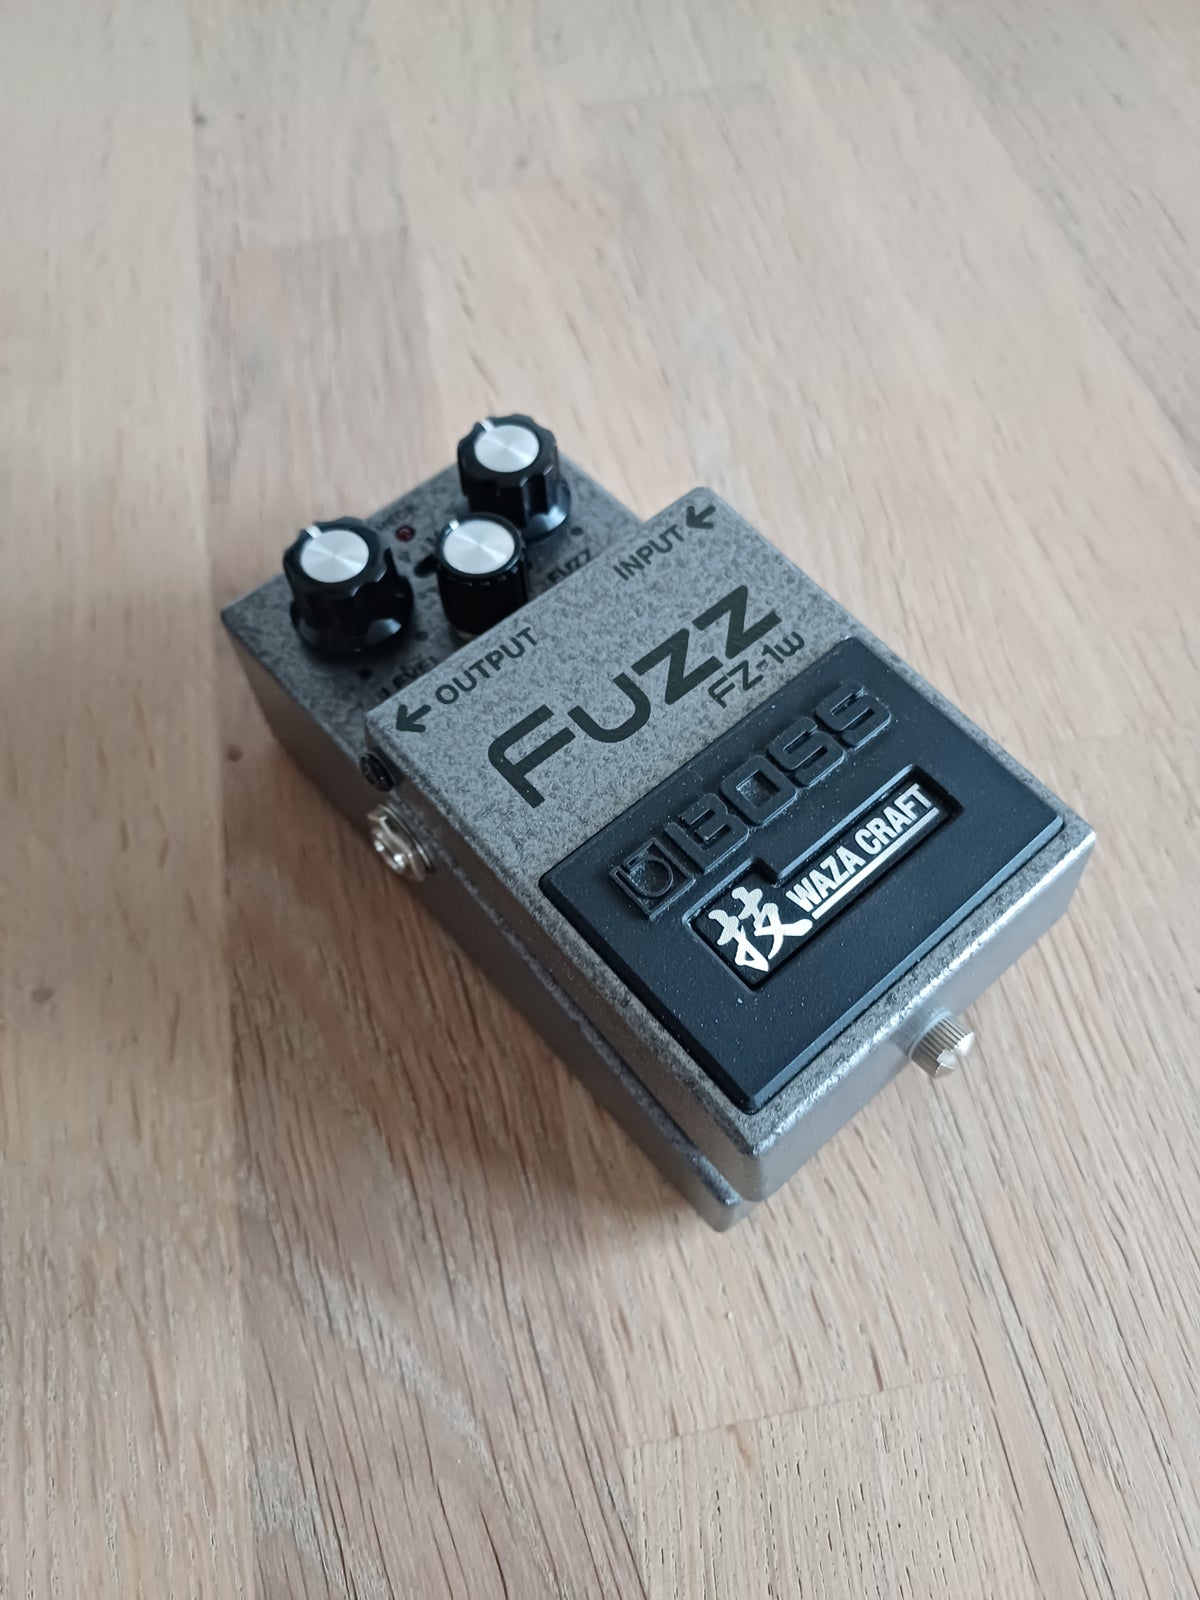 Fuzz pedal, Boss FZ-1w Fuzz